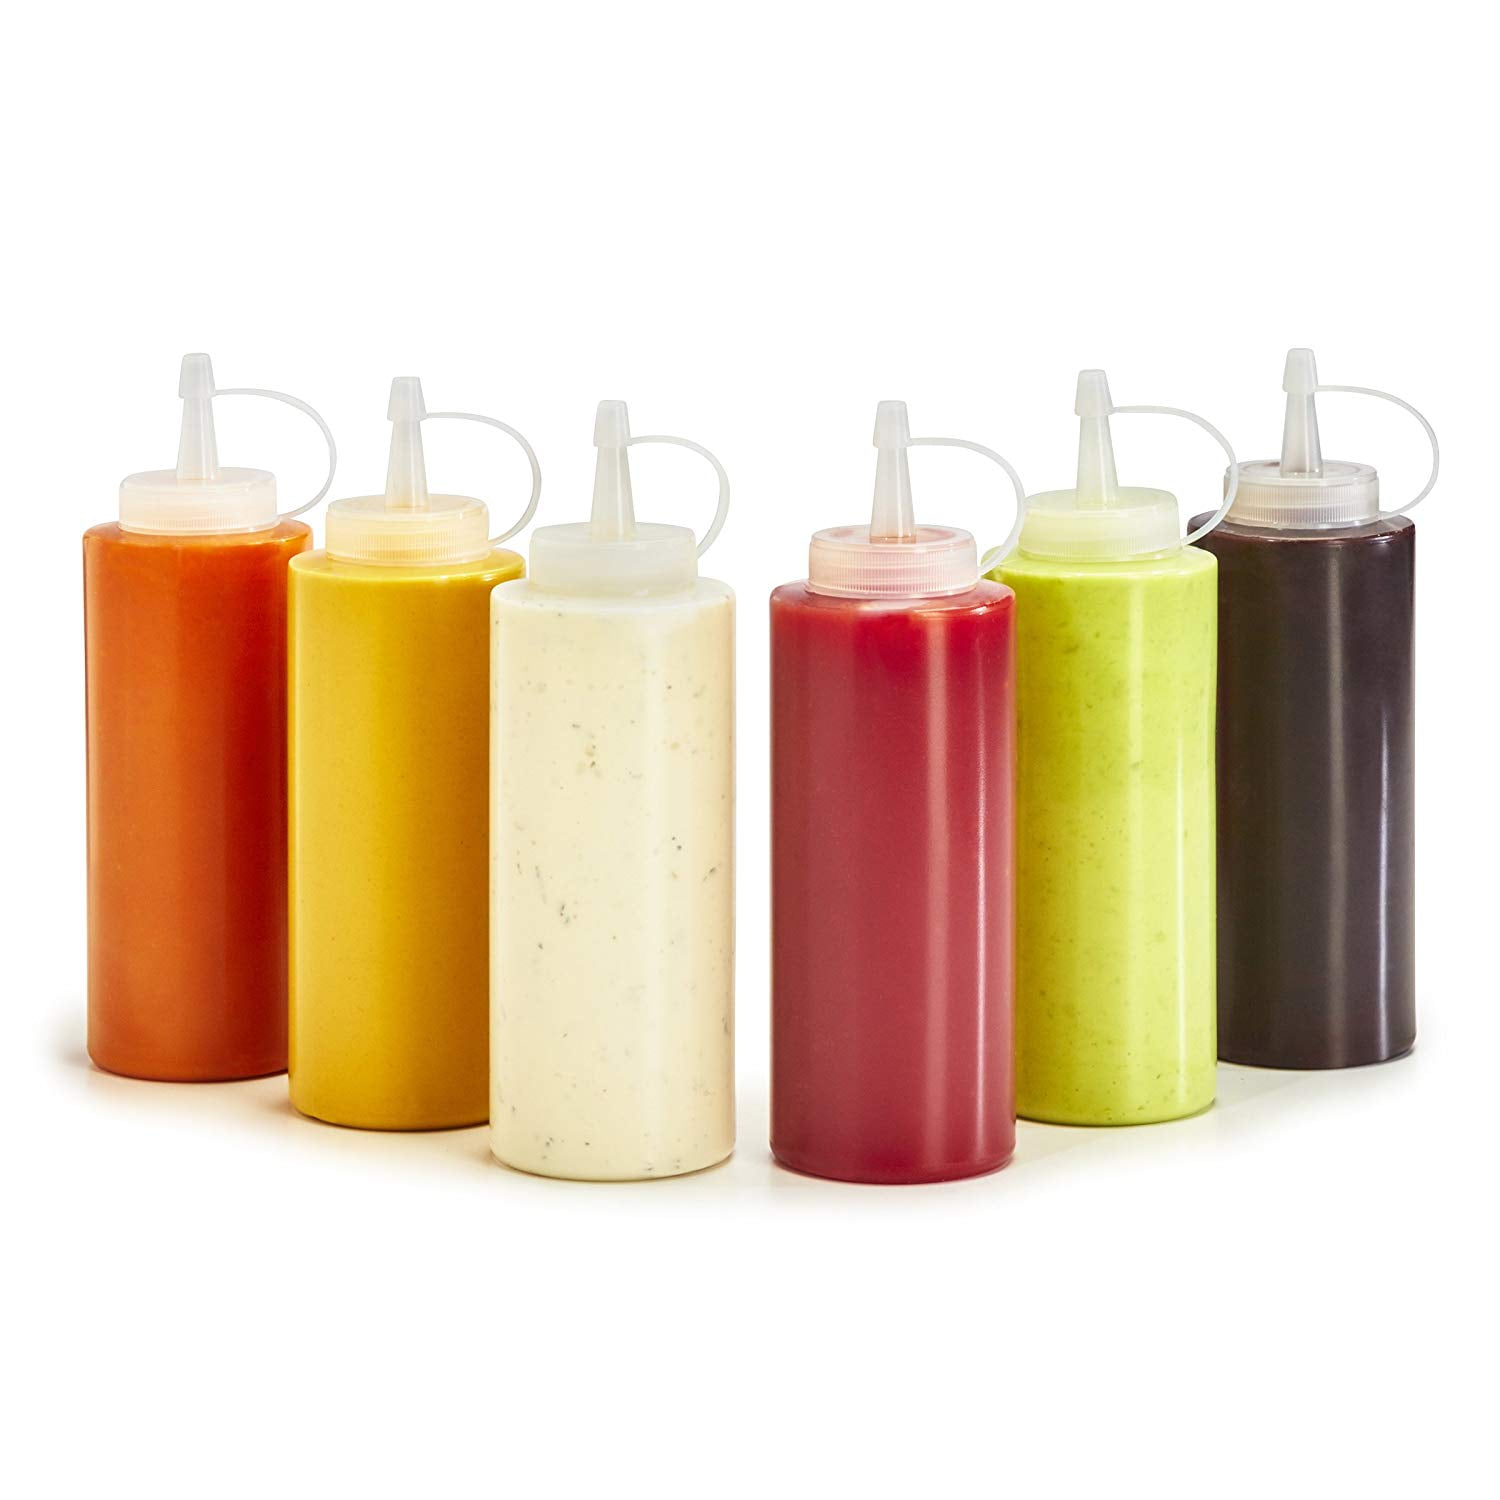 MICGEEK MICGEEK 6 Packs of 8Oz Squeeze Seasoning Bottles Multicolor Plastic Ketchup Oil Soy Sauce Bottle 